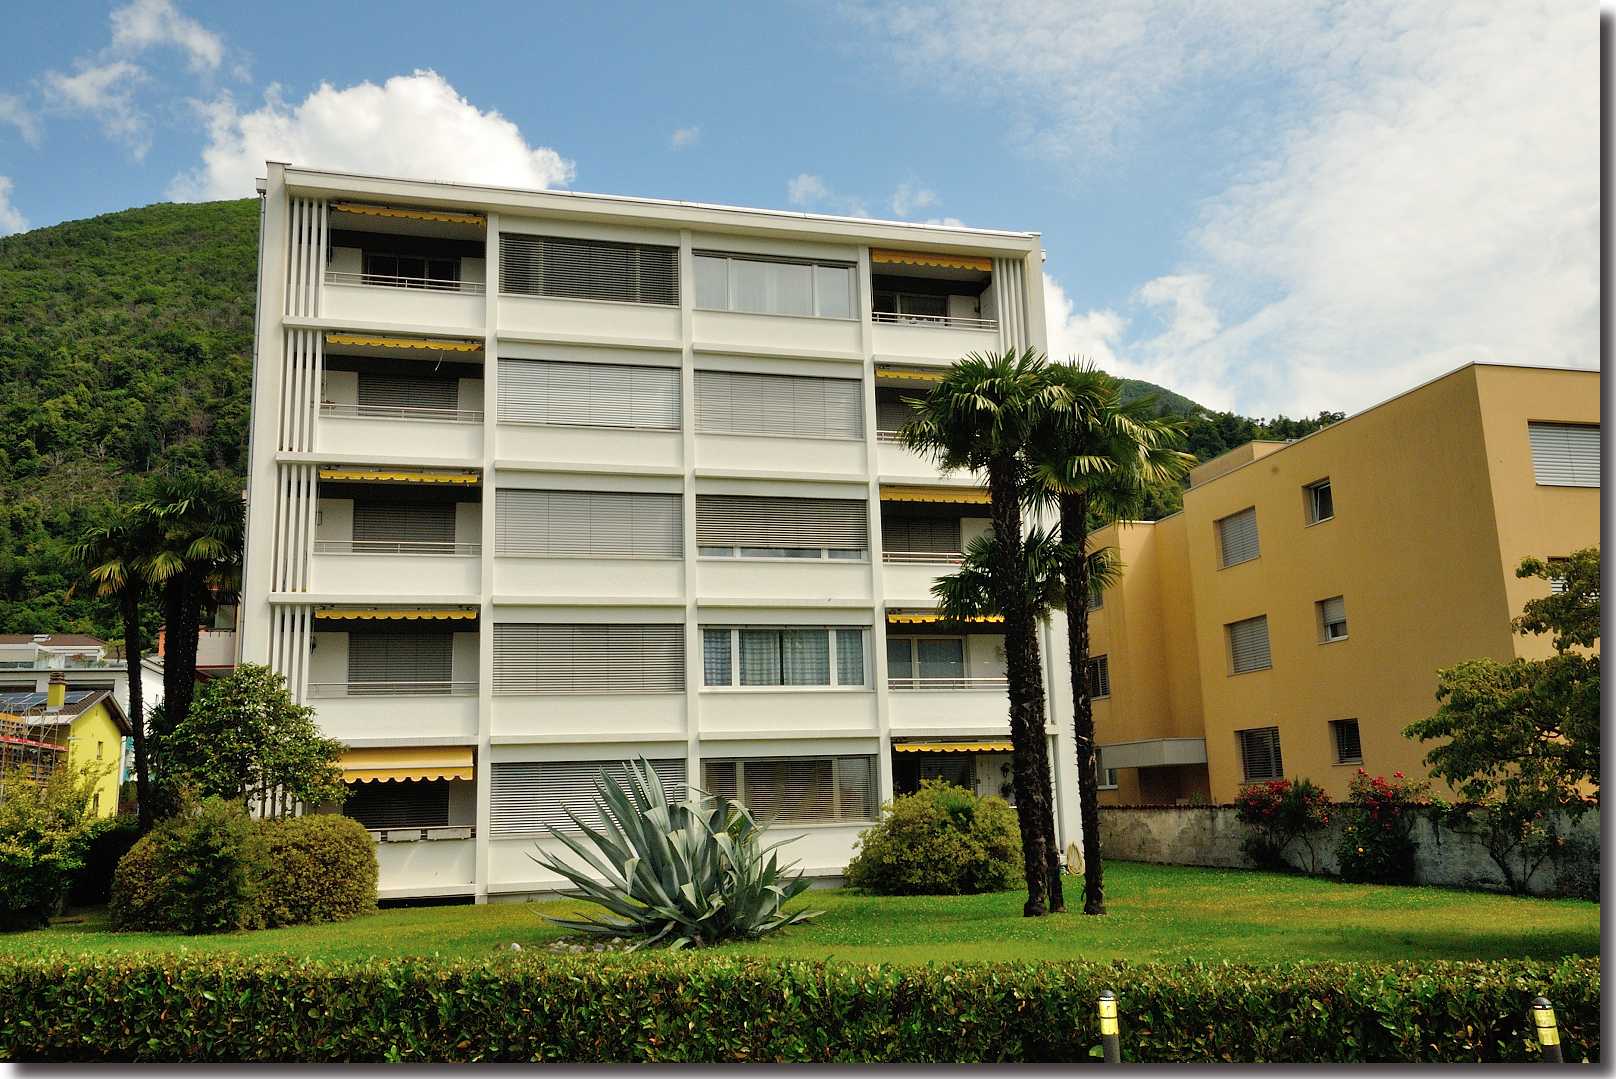 Residenza Forsizia - via San Martino 2 - Solduno Locarno [ Aussenansicht ]